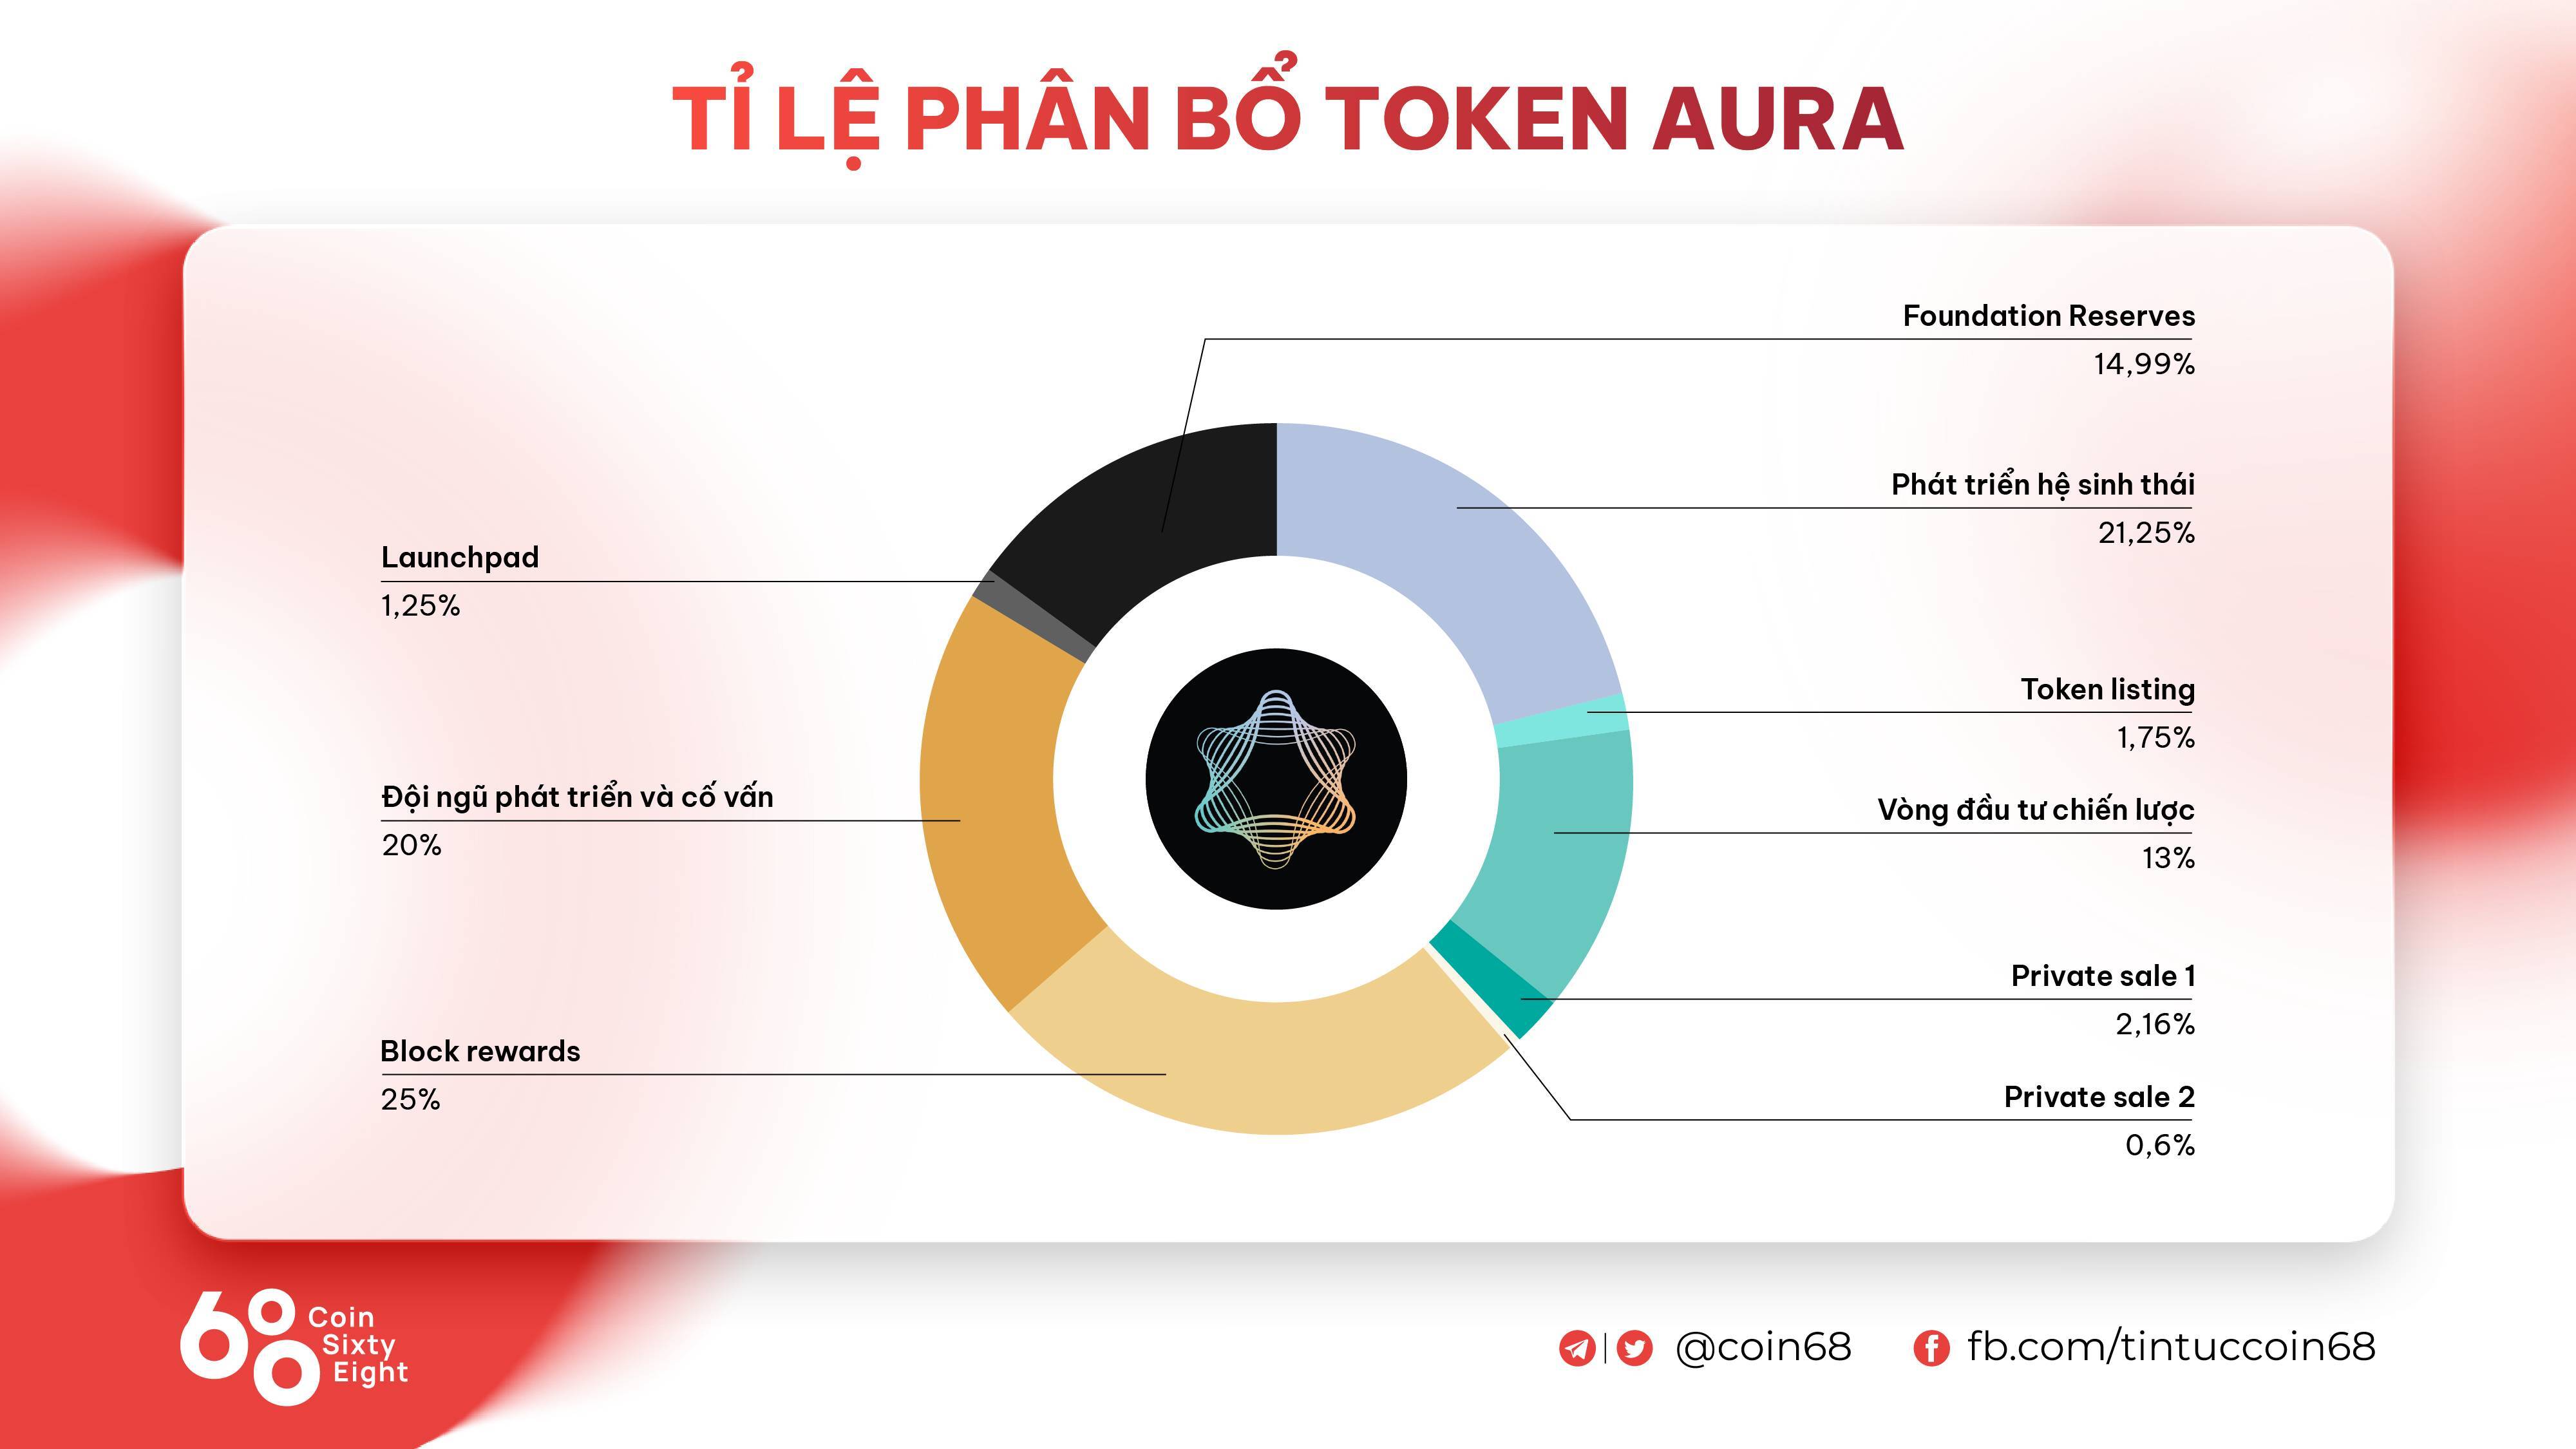 Aura Network Là Gì Tìm Hiểu Về Blockchain Layer 1 Dành Riêng Cho Nft